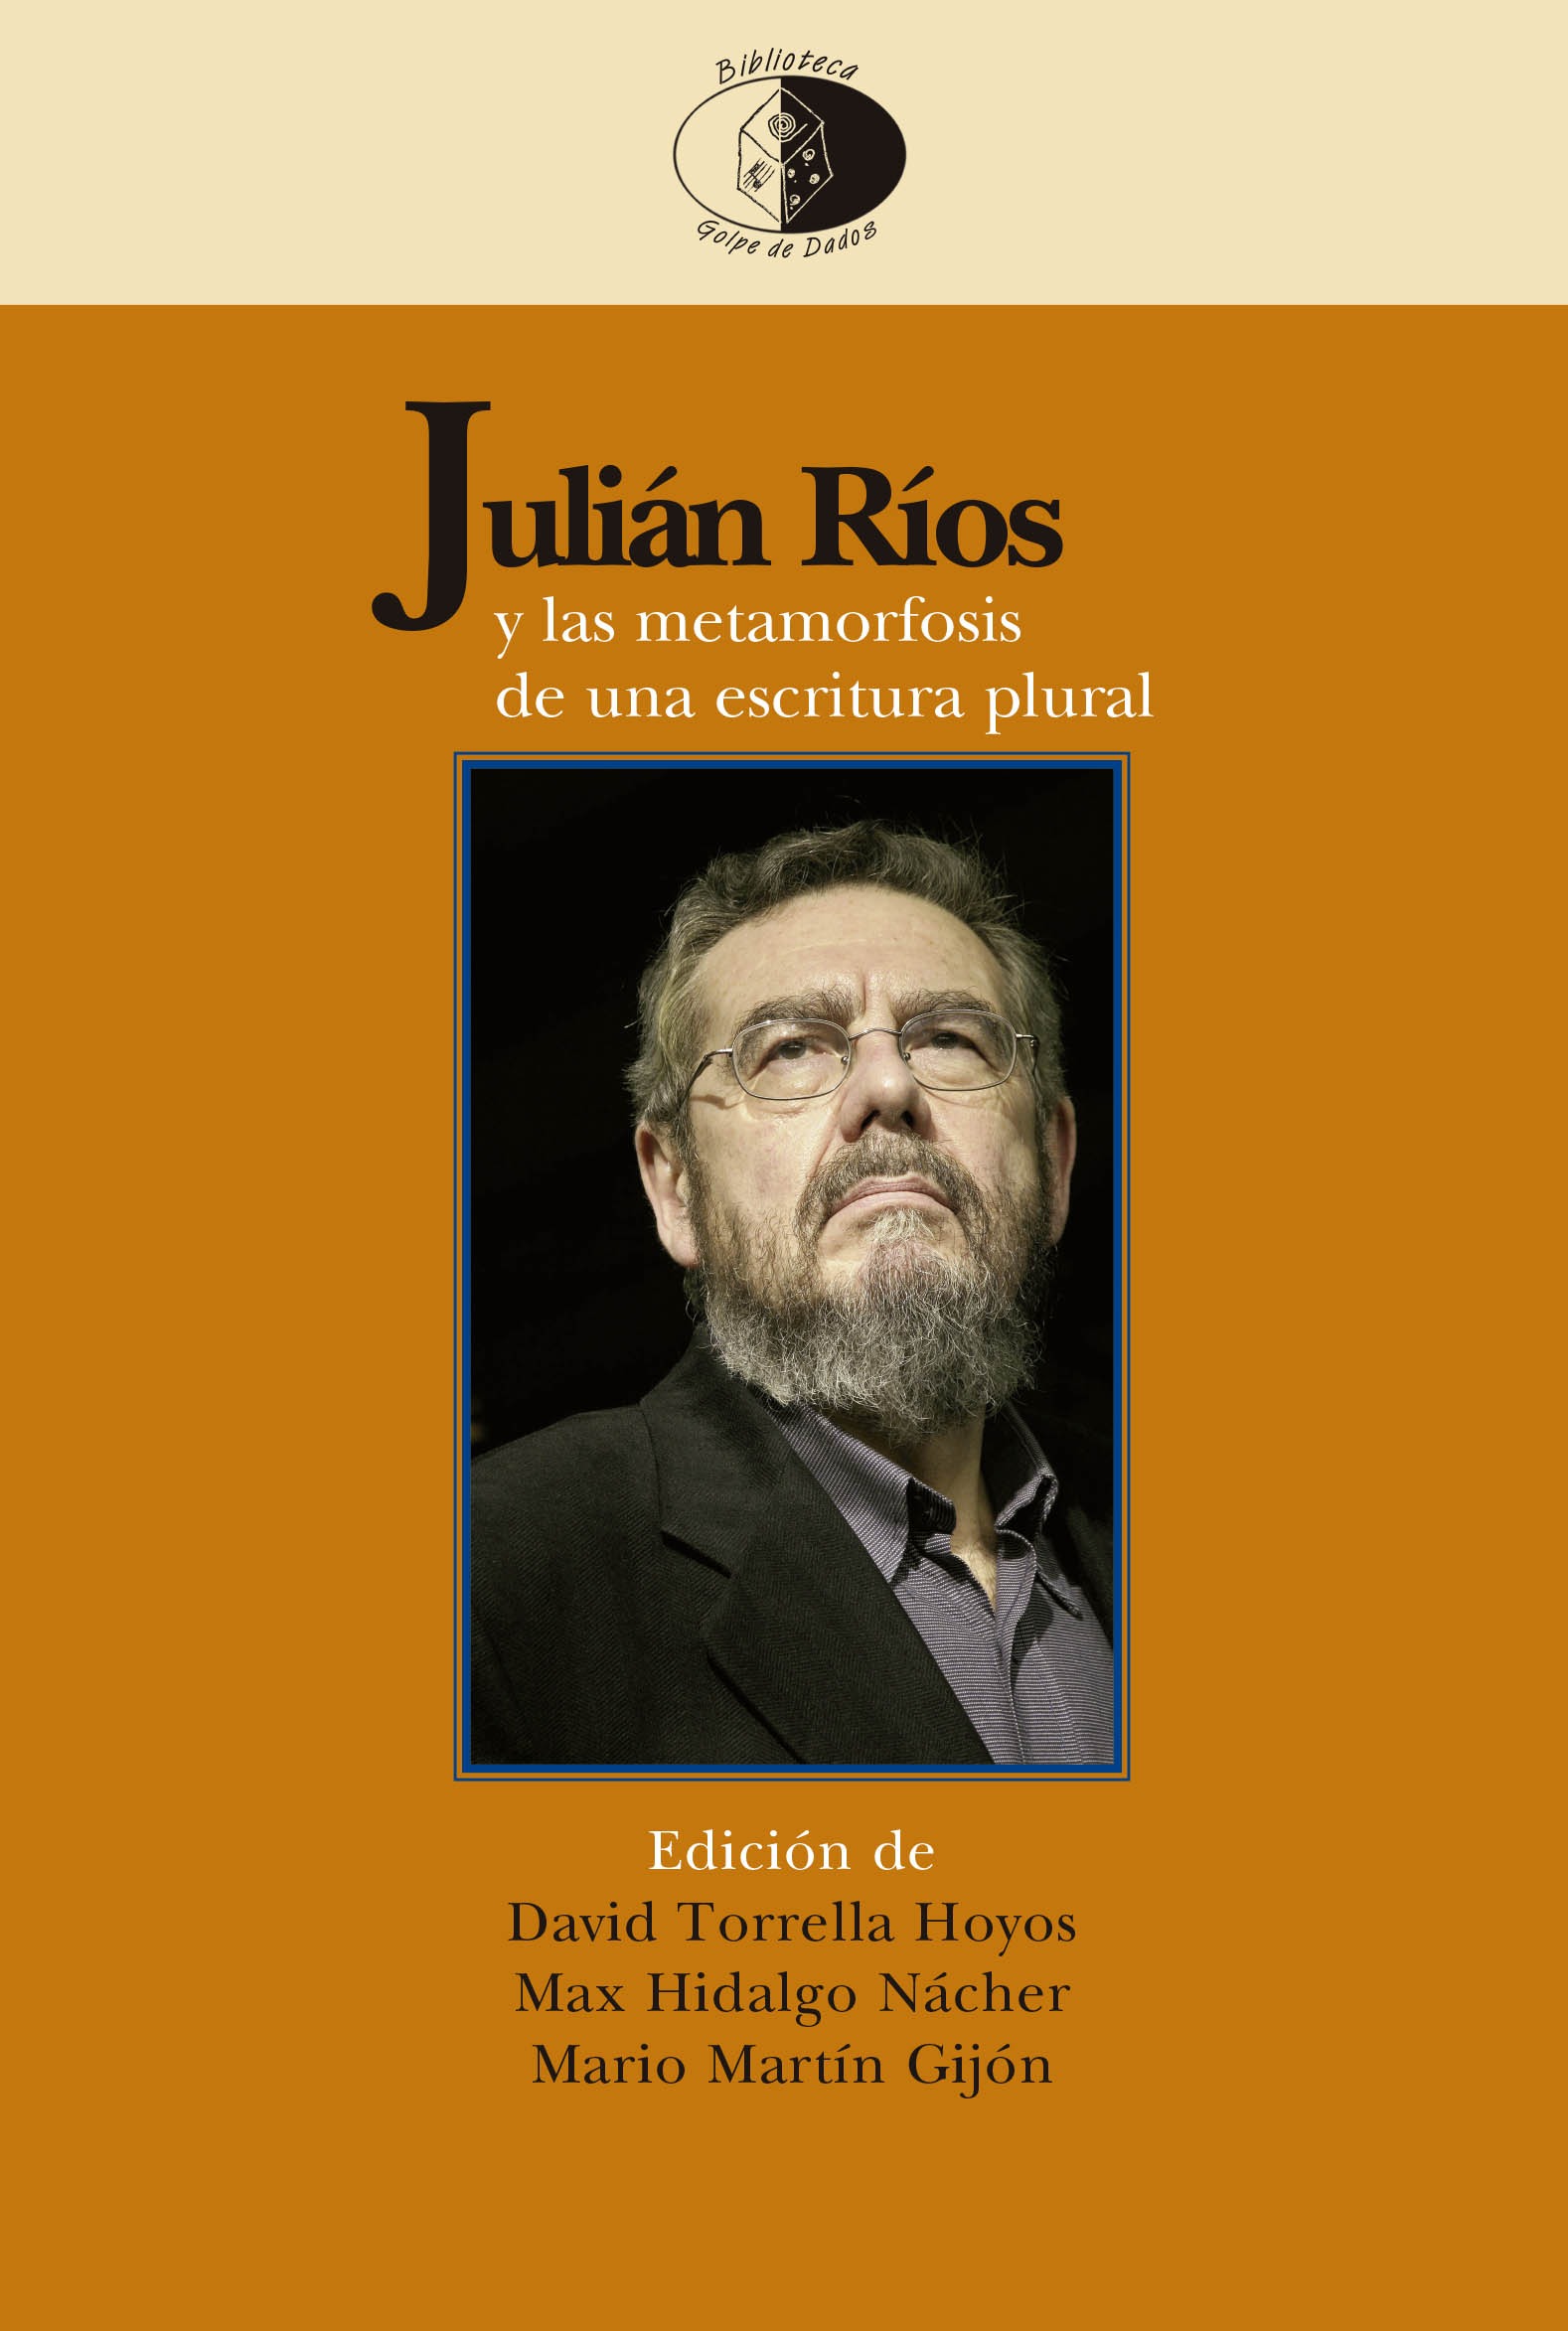 Presentación de Julián Ríos y las metamorfosis de una escritura plural. Edición de David Torrella Hoyos, Max Hidalgo Nácher y Mario Martín Gijón